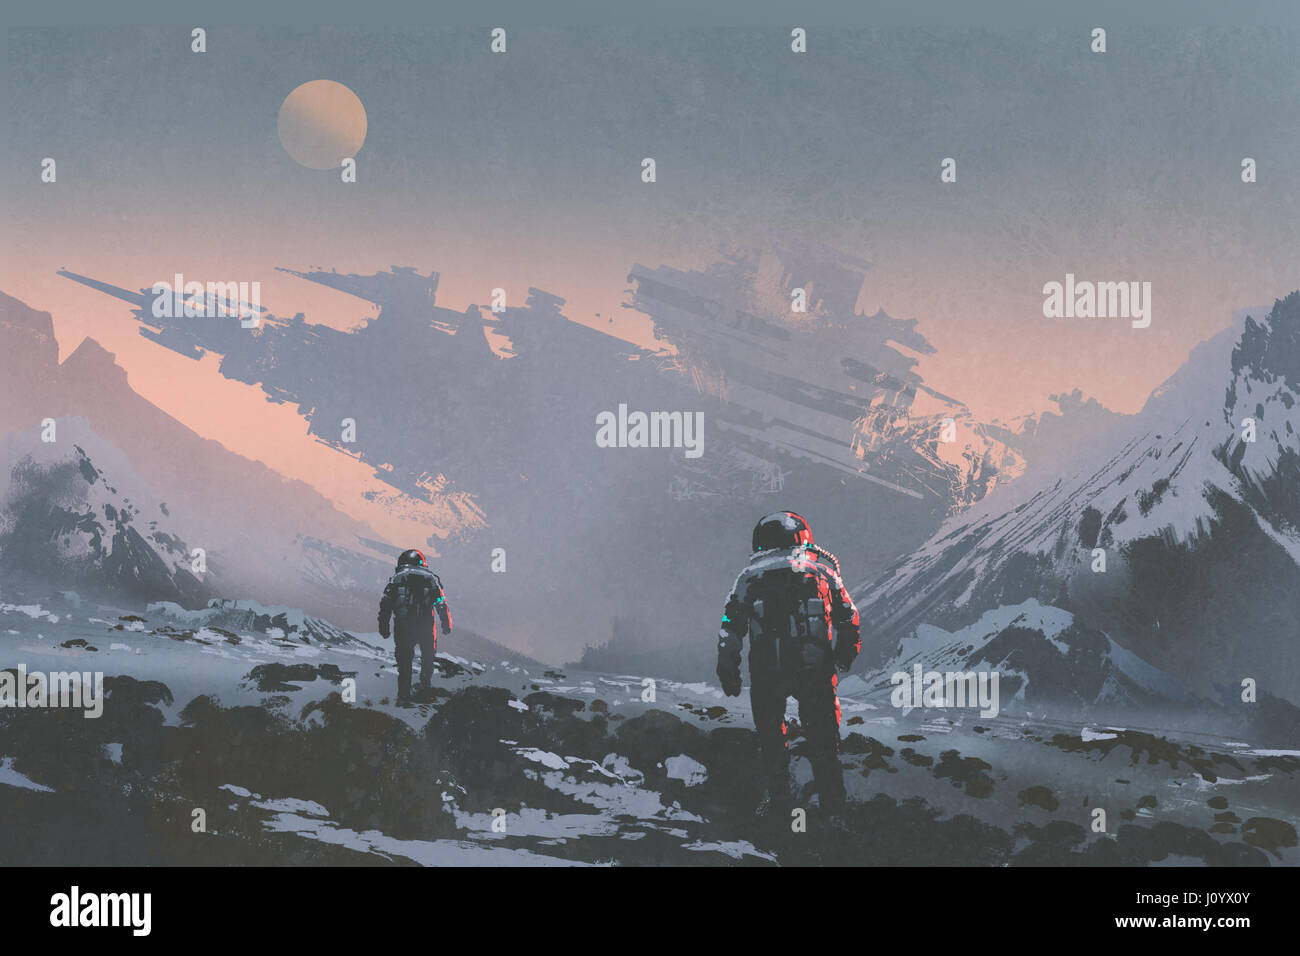 Concepto de sci-fi de los astronautas caminando a la nave abandonada en el planeta alienígena, ilustración pintura Foto de stock